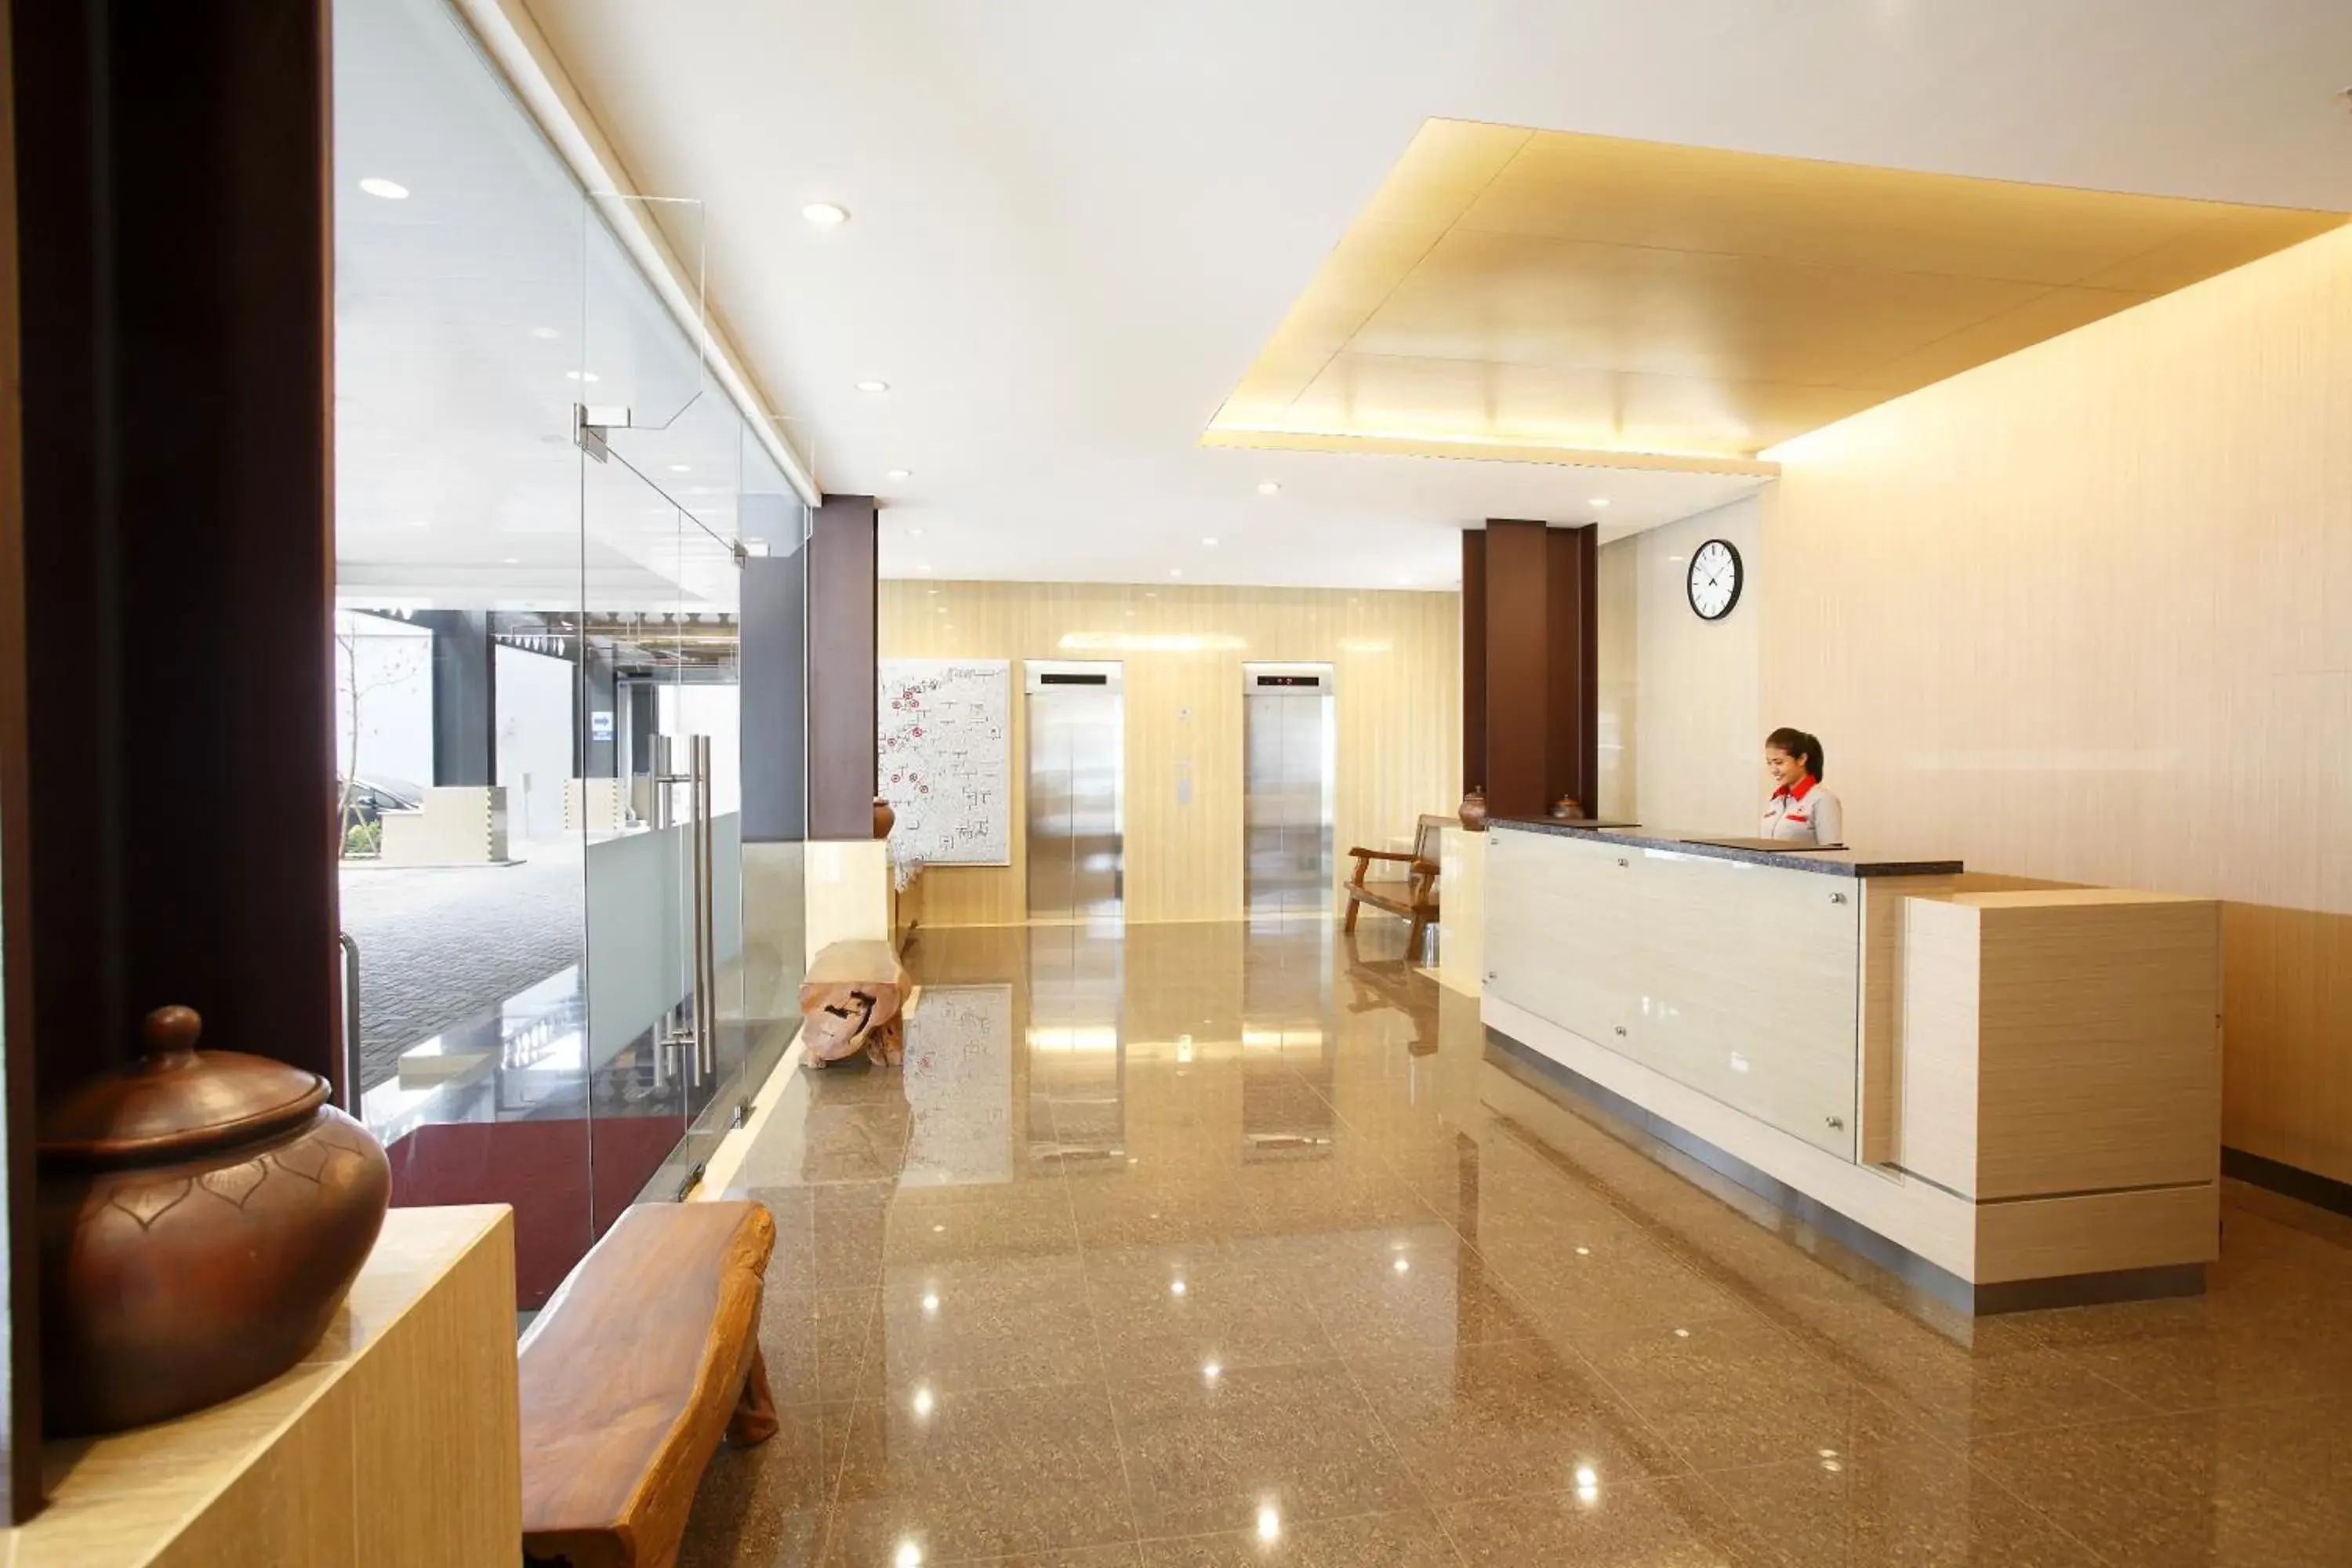 Lobby or reception, Lobby/Reception in Amaris Hotel Pasar Baru